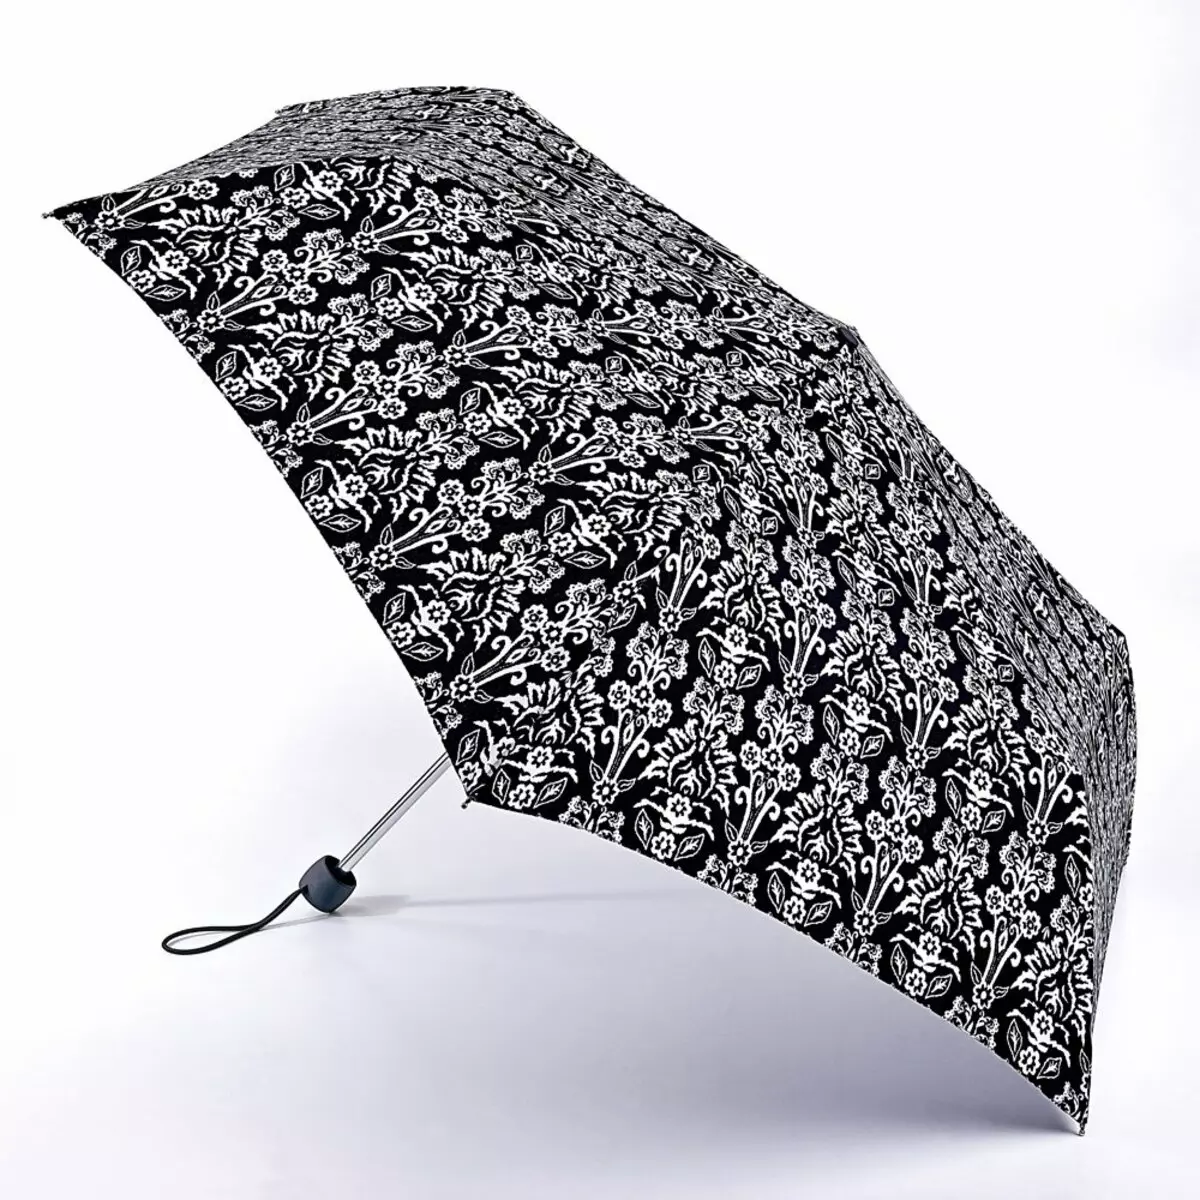 Fulton Umbrellas (53 duab): Cov qauv ntawm cov qauv thiab kev txheeb xyuas hais txog Umbrellas 15229_50